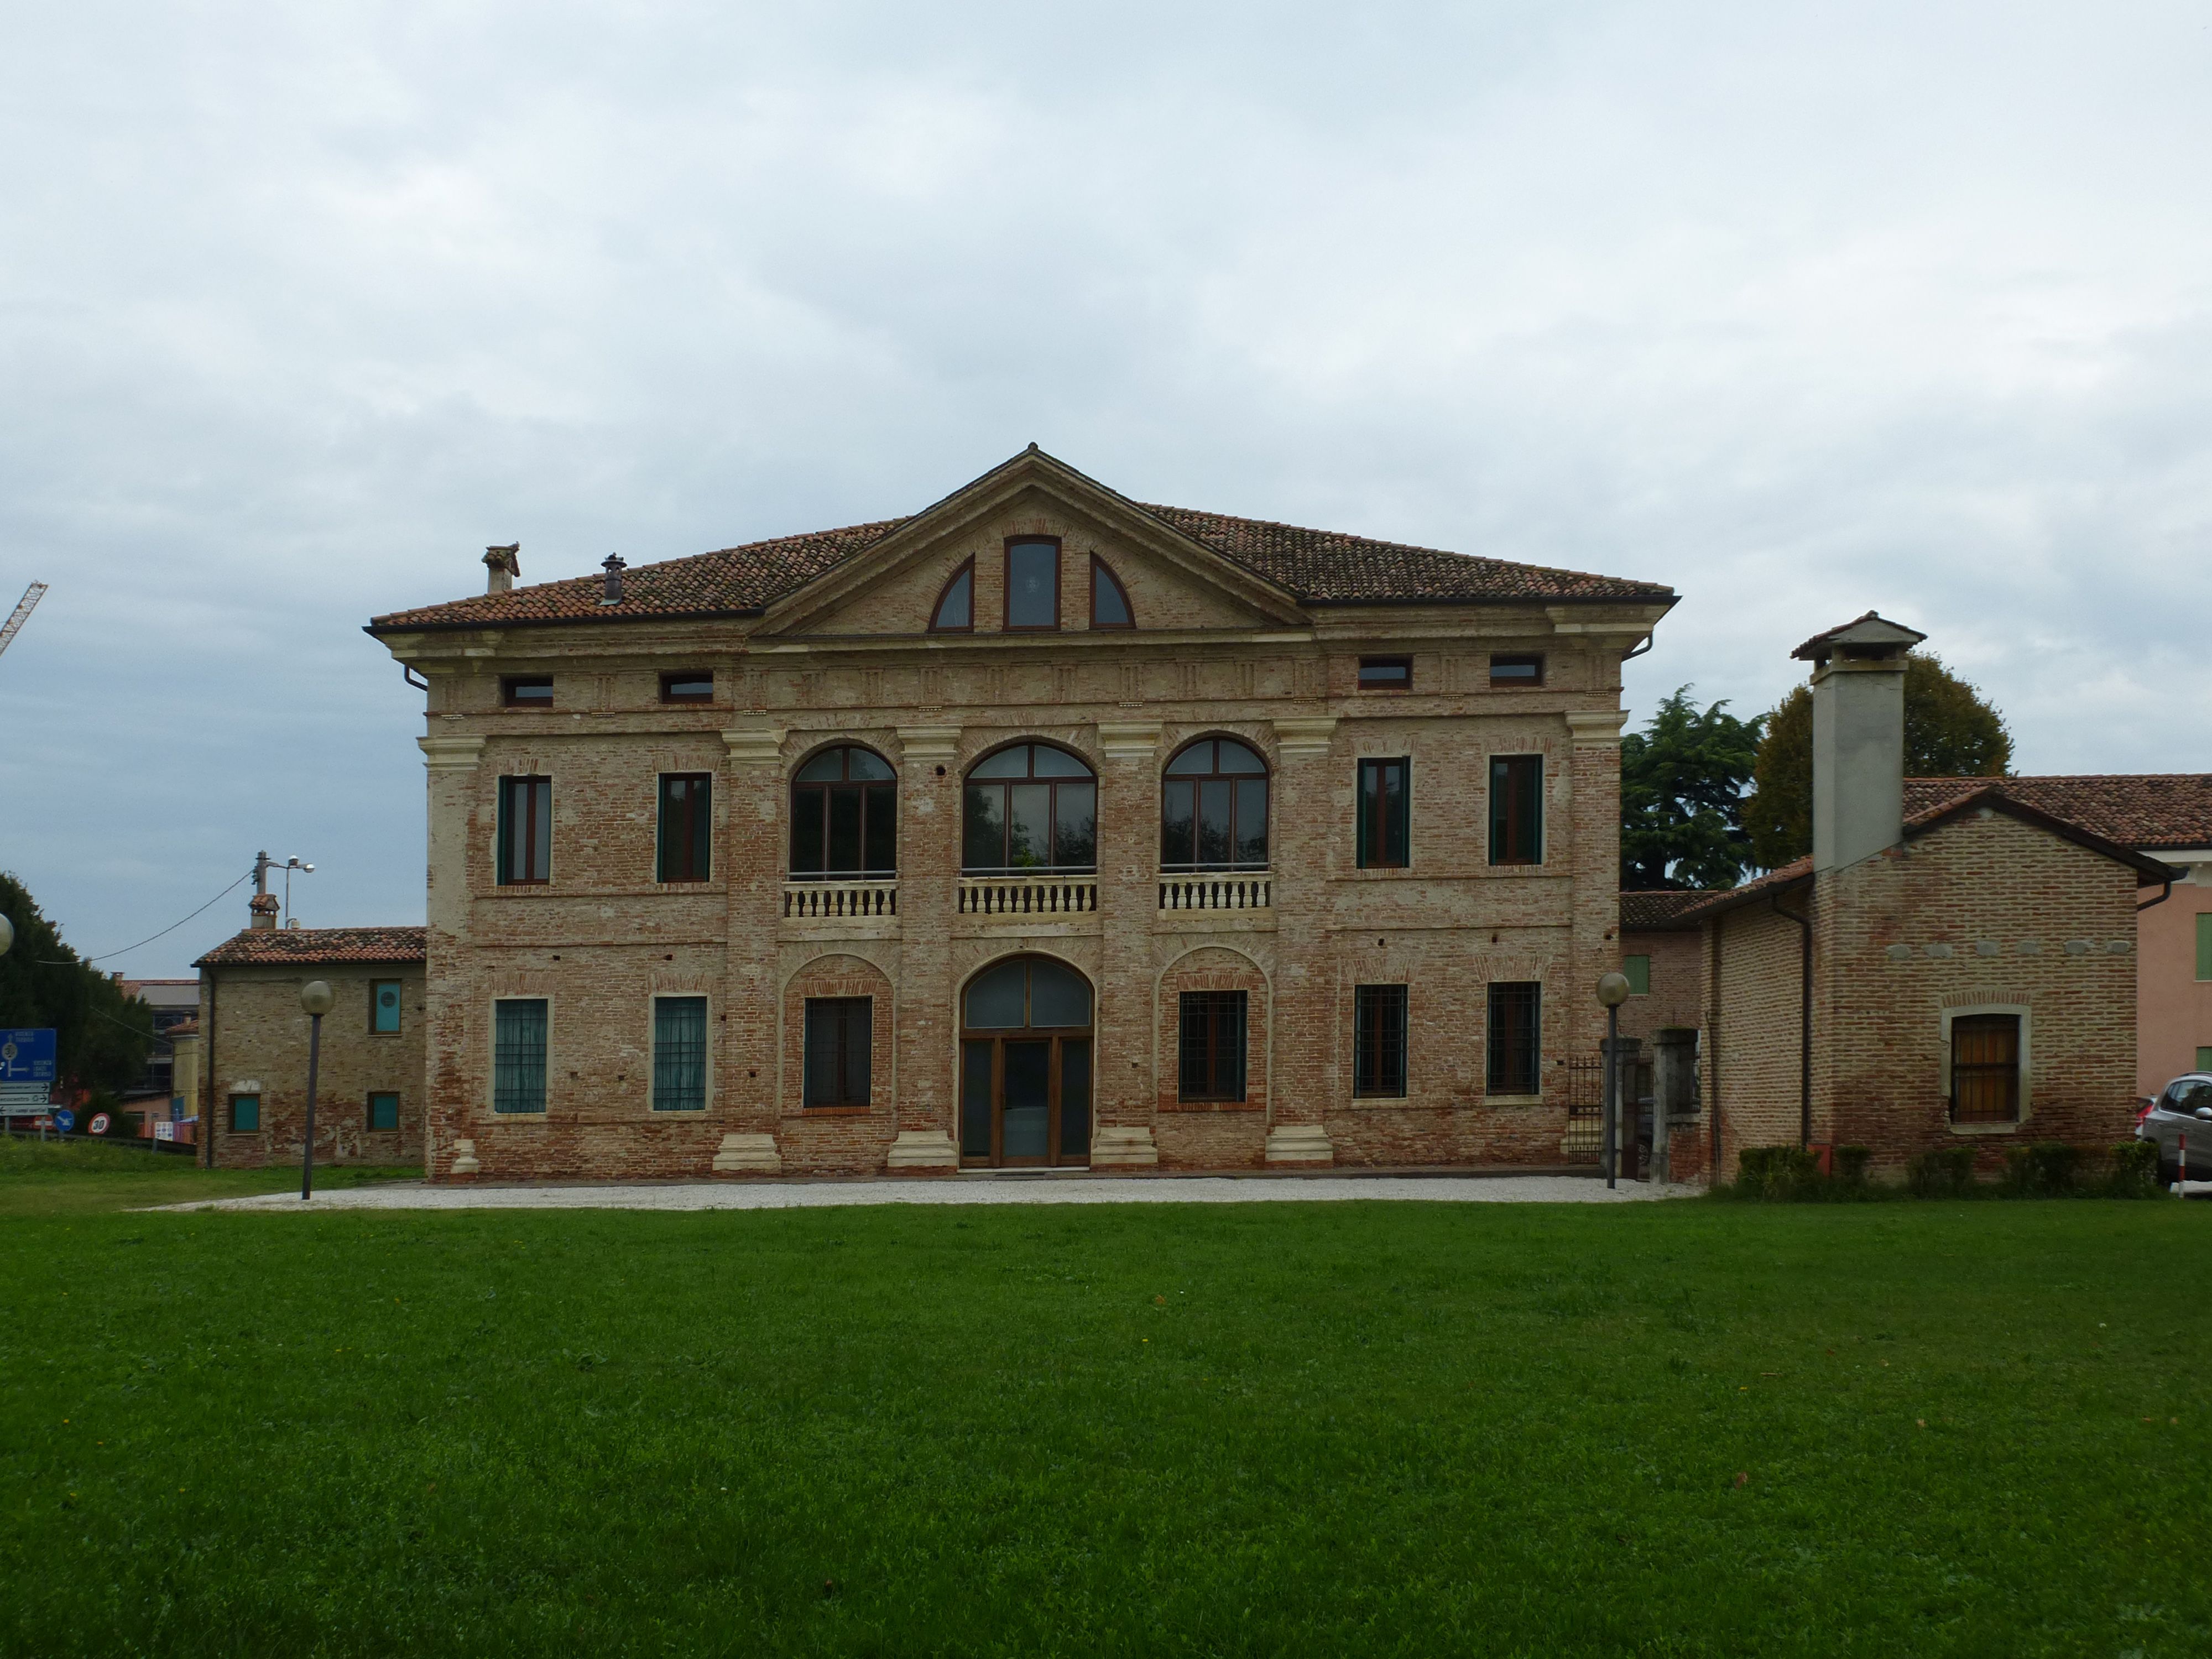 Villa Thiene, Quinto VIcentino (VI), Italy